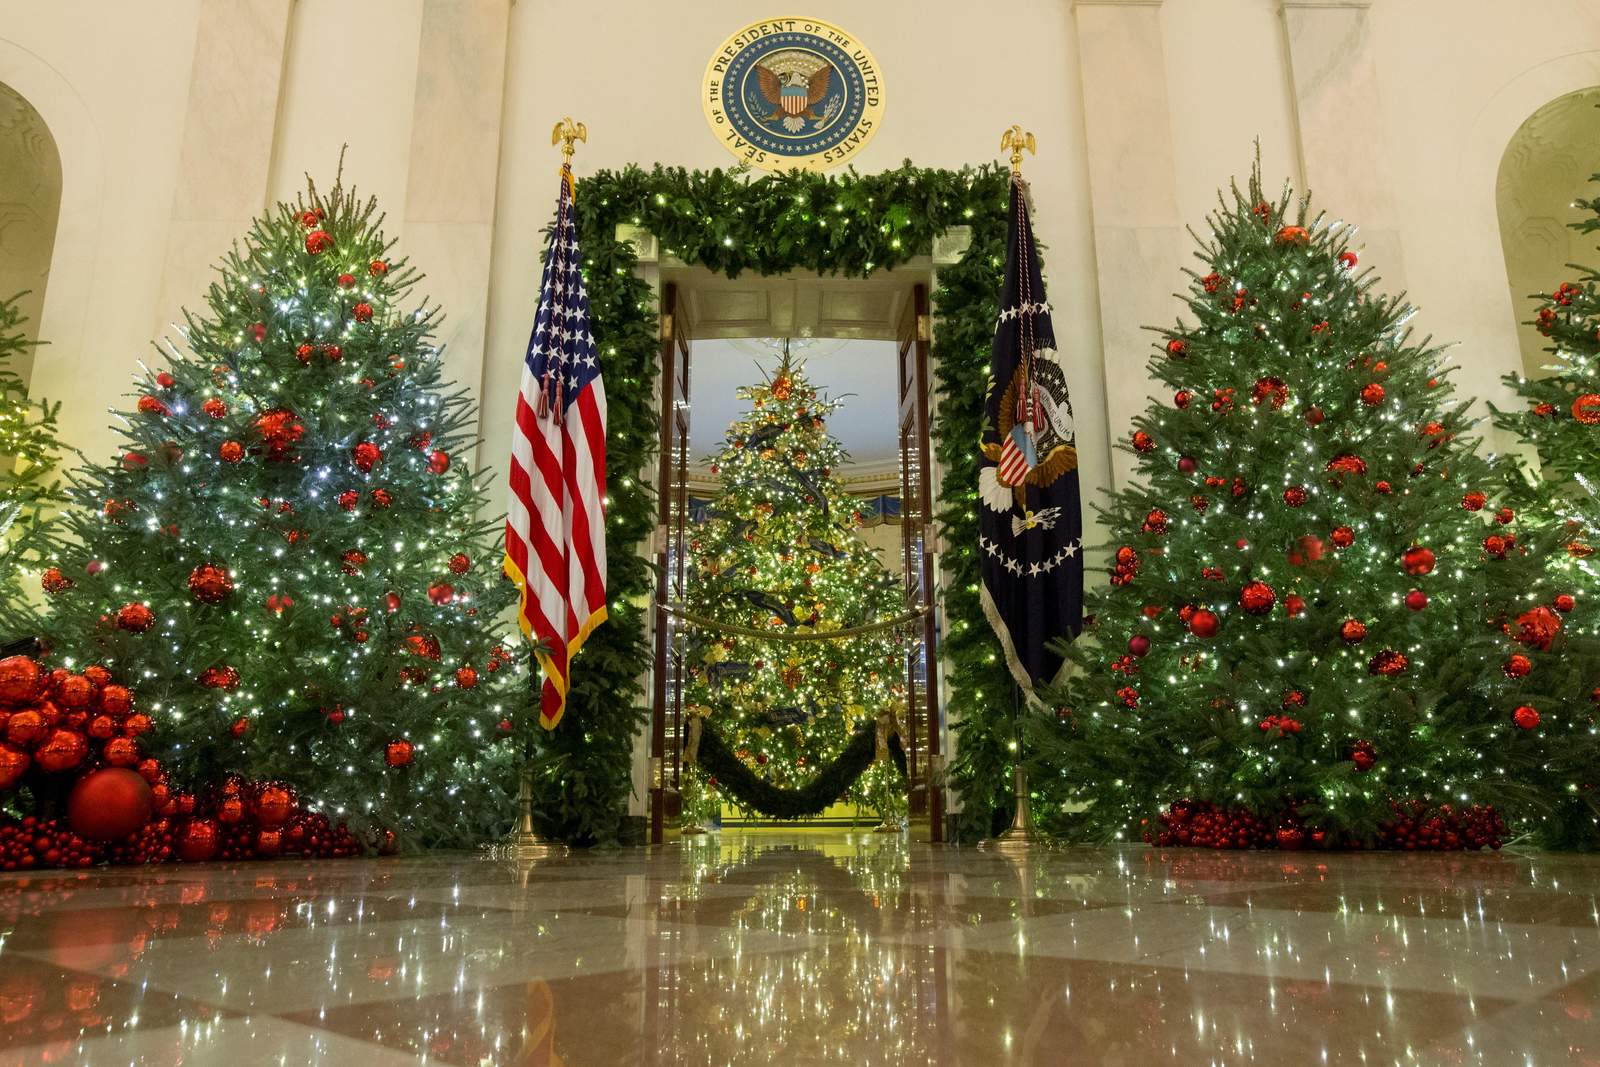 La residencia presidencial mantendrá esta escenografía a lo largo de diciembre para recibir a más de 30,000 visitantes en un centenar de recepciones y actividades. (EFE)